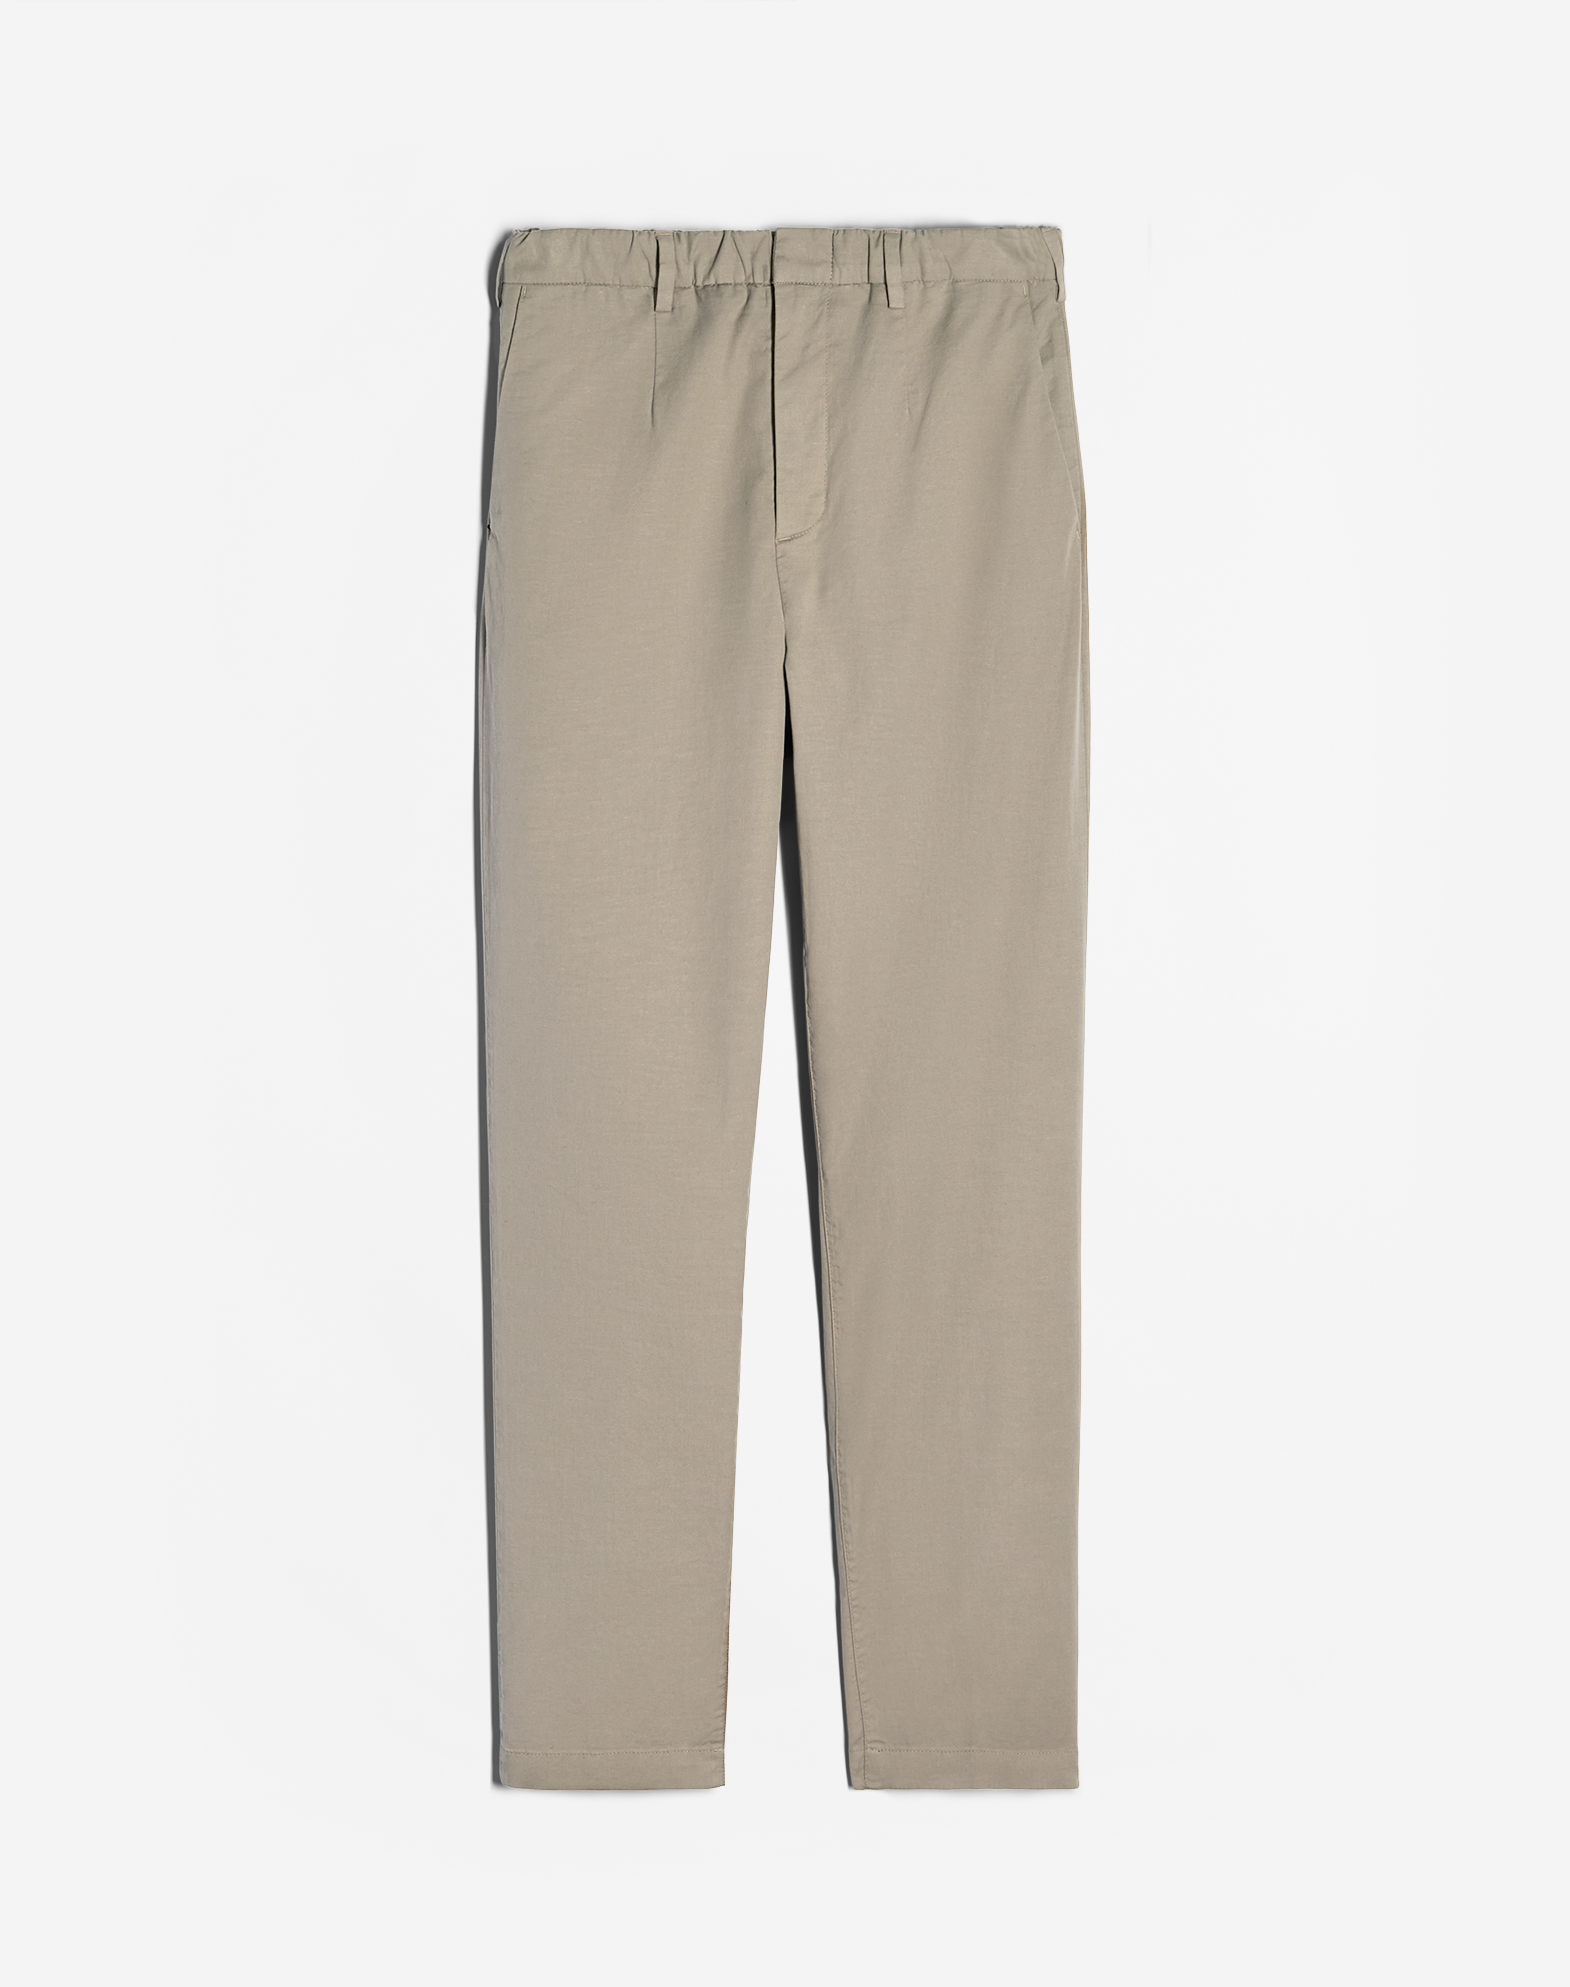 Dunhill Men's Pantaloni Formali